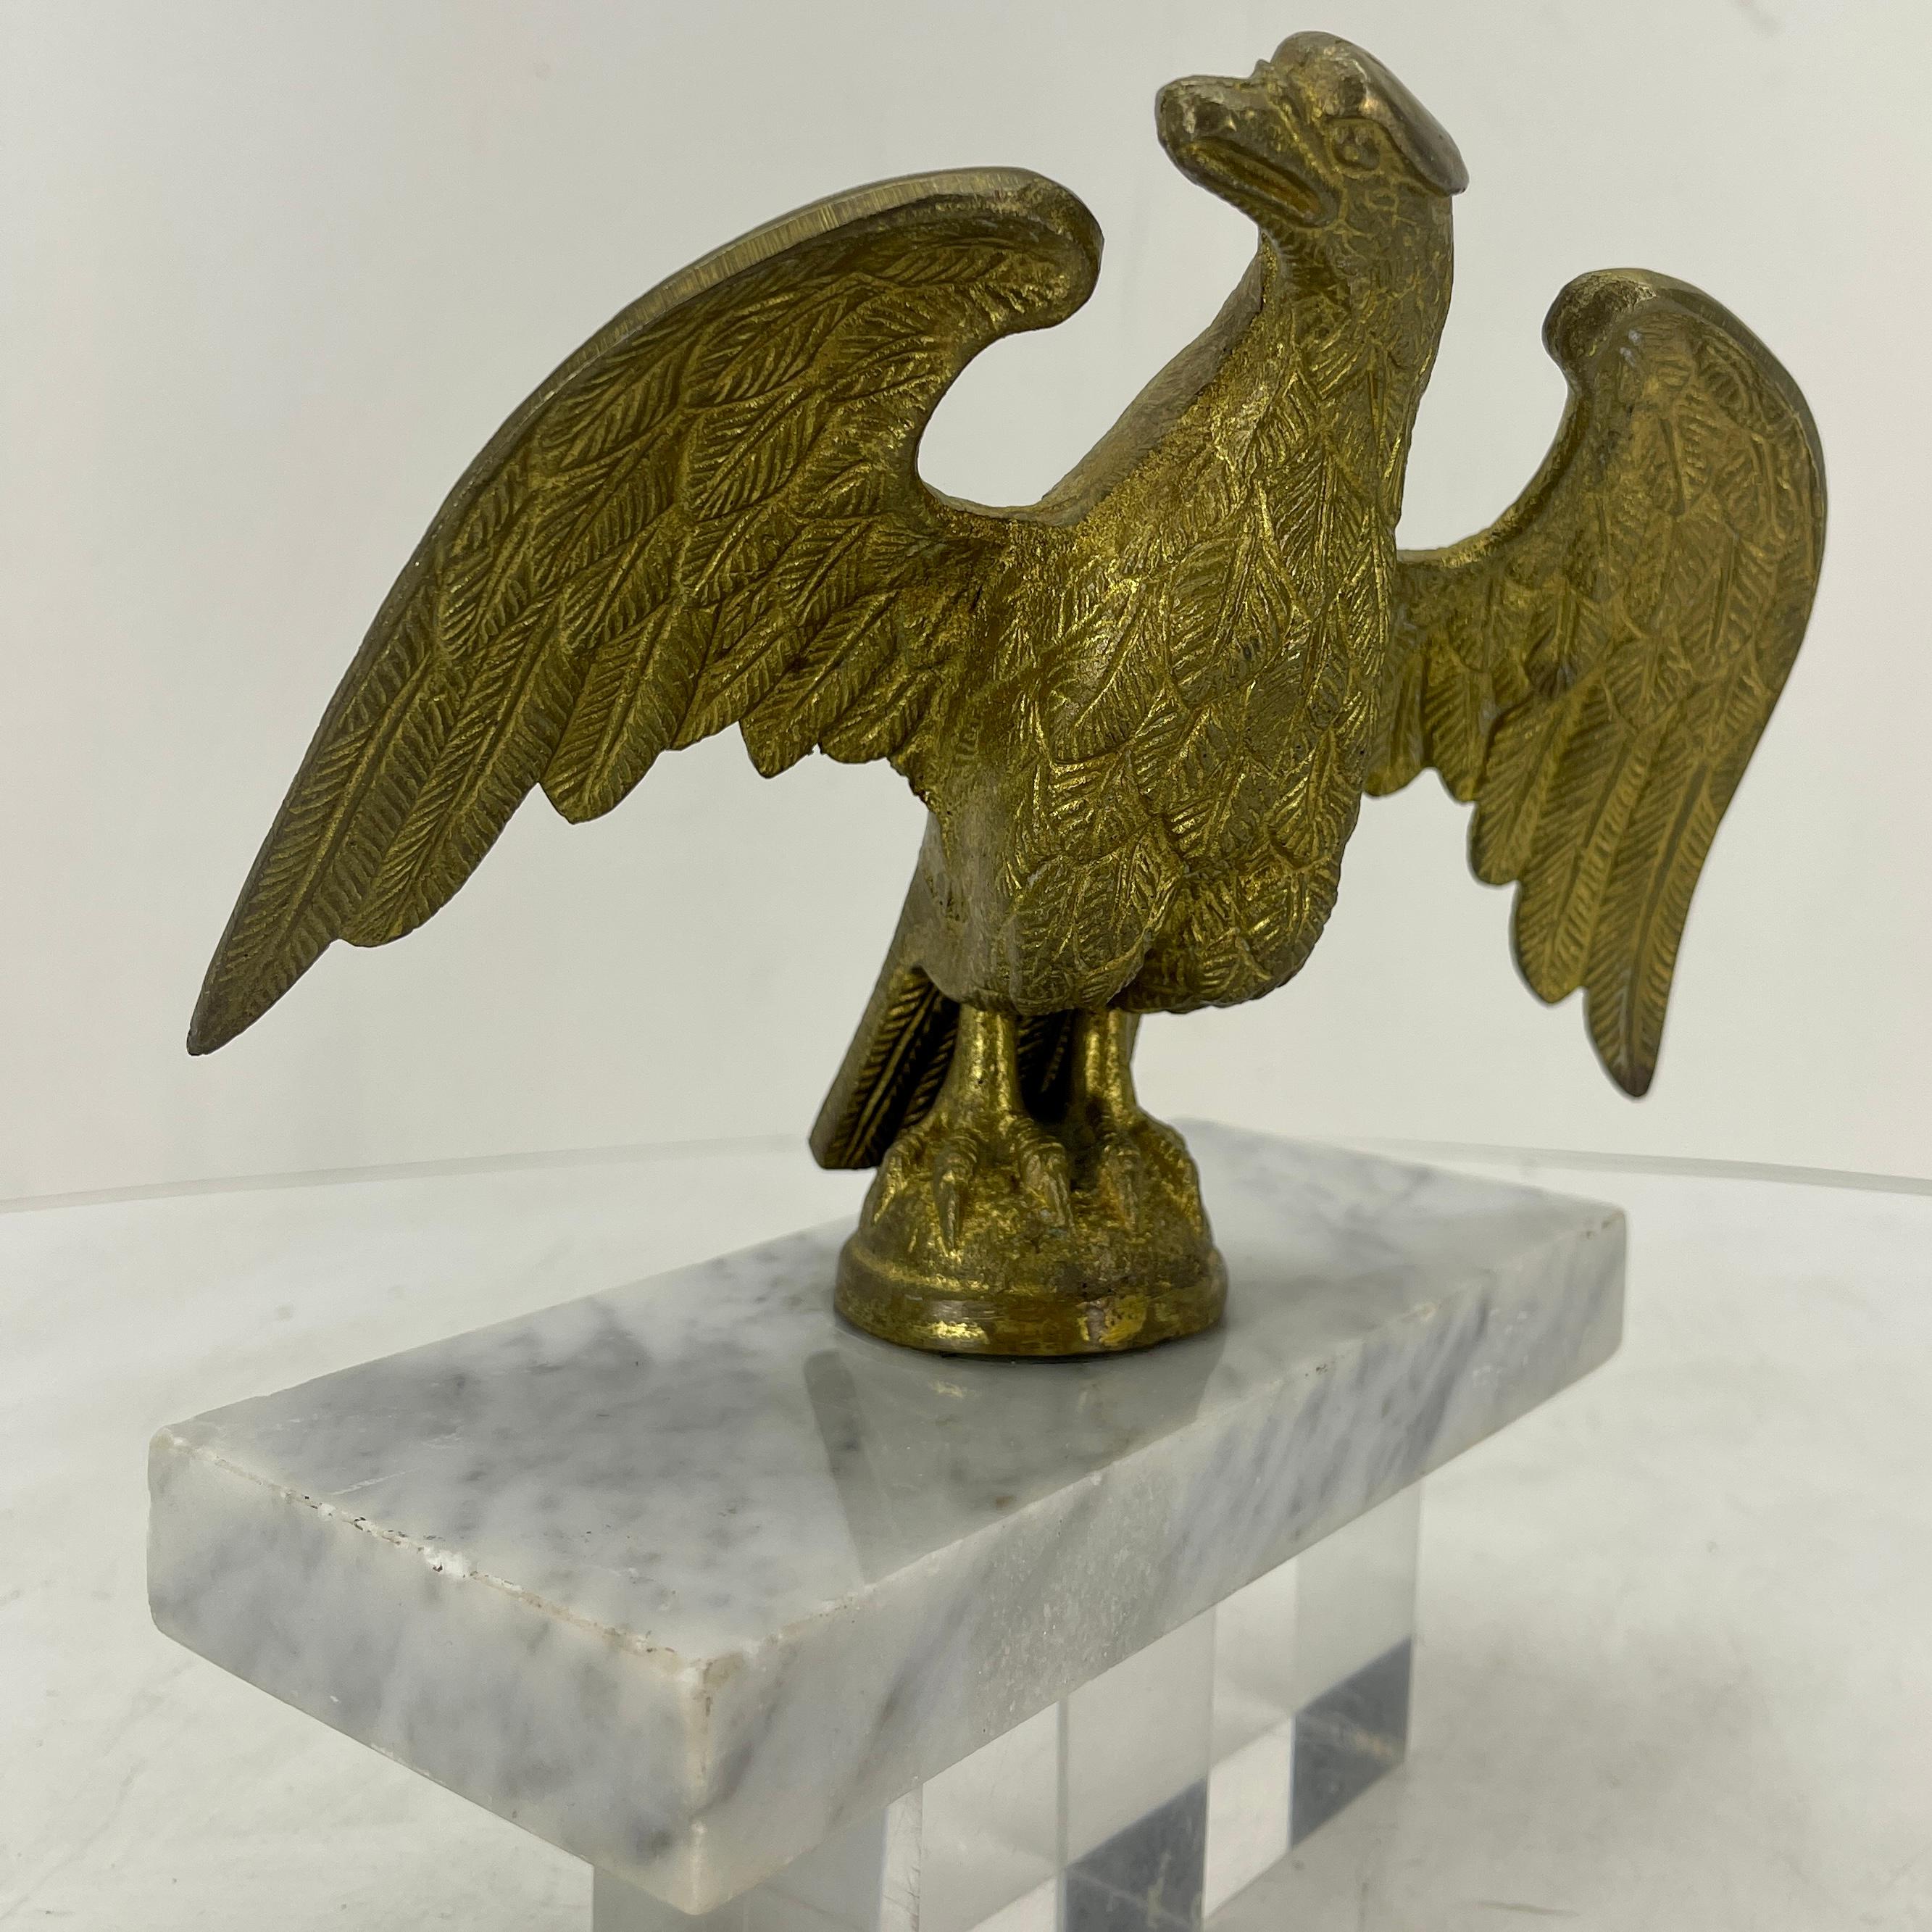 Sculpture italienne en bronze doré représentant un aigle sur une pièce rectangulaire en marbre blanc de Carrera. La grande qualité du travail de dorure et le jeune âge de la sculpture de l'aigle la rendent exceptionnelle.
